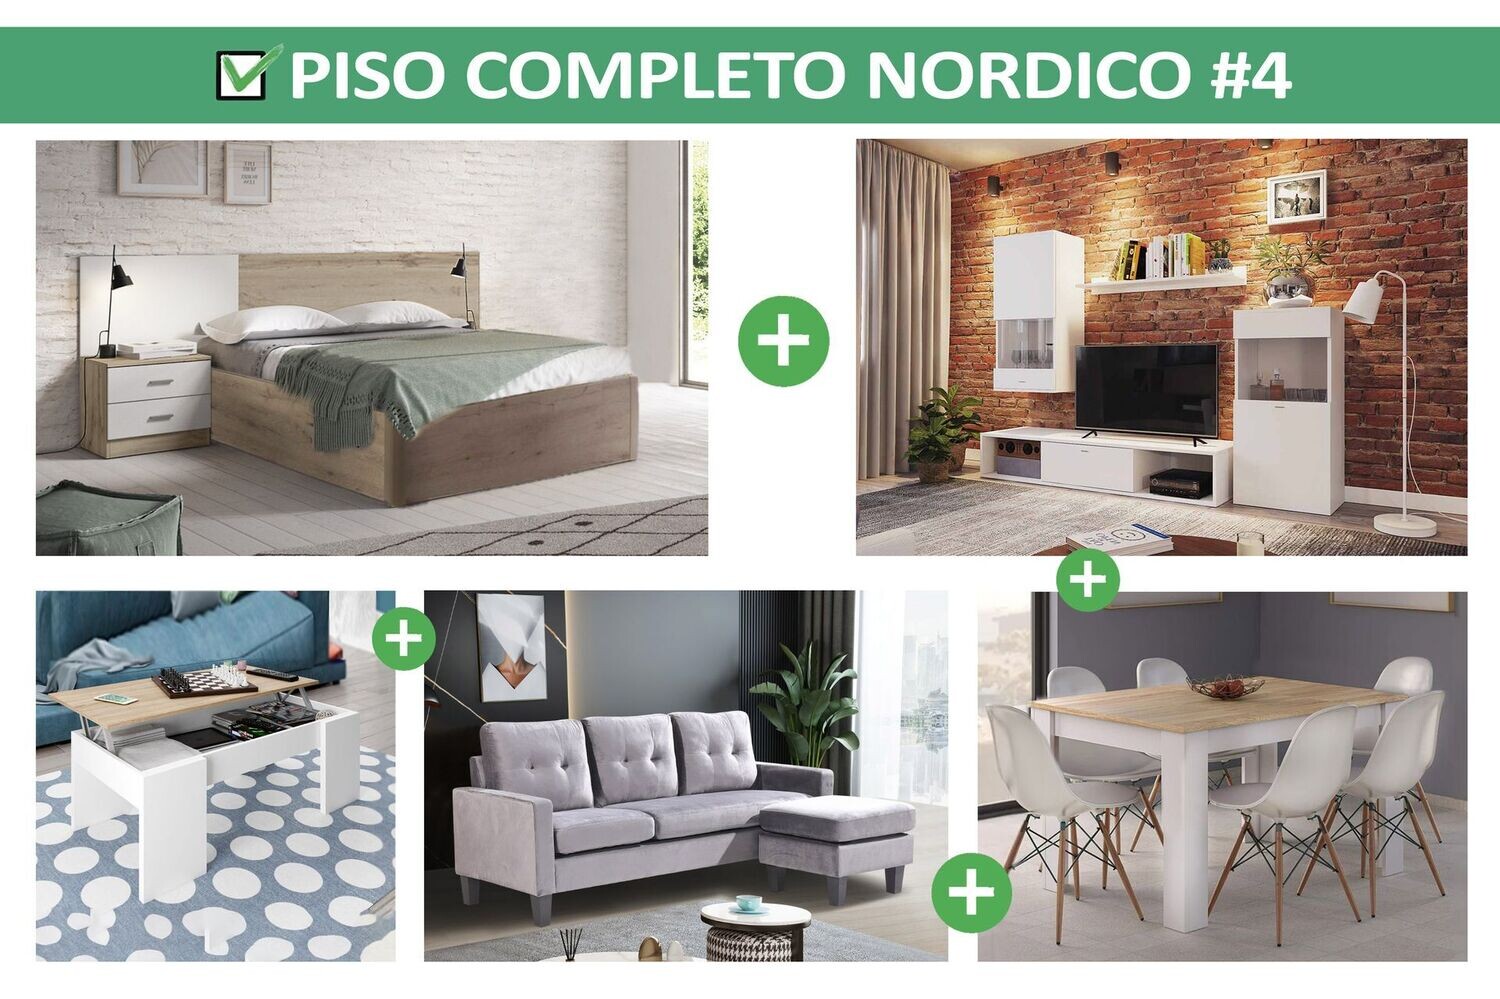 Piso Completo Nordico: Sofa + Salon + Mesas + 6 Sillas + Canape + Colchon +  Cabecero